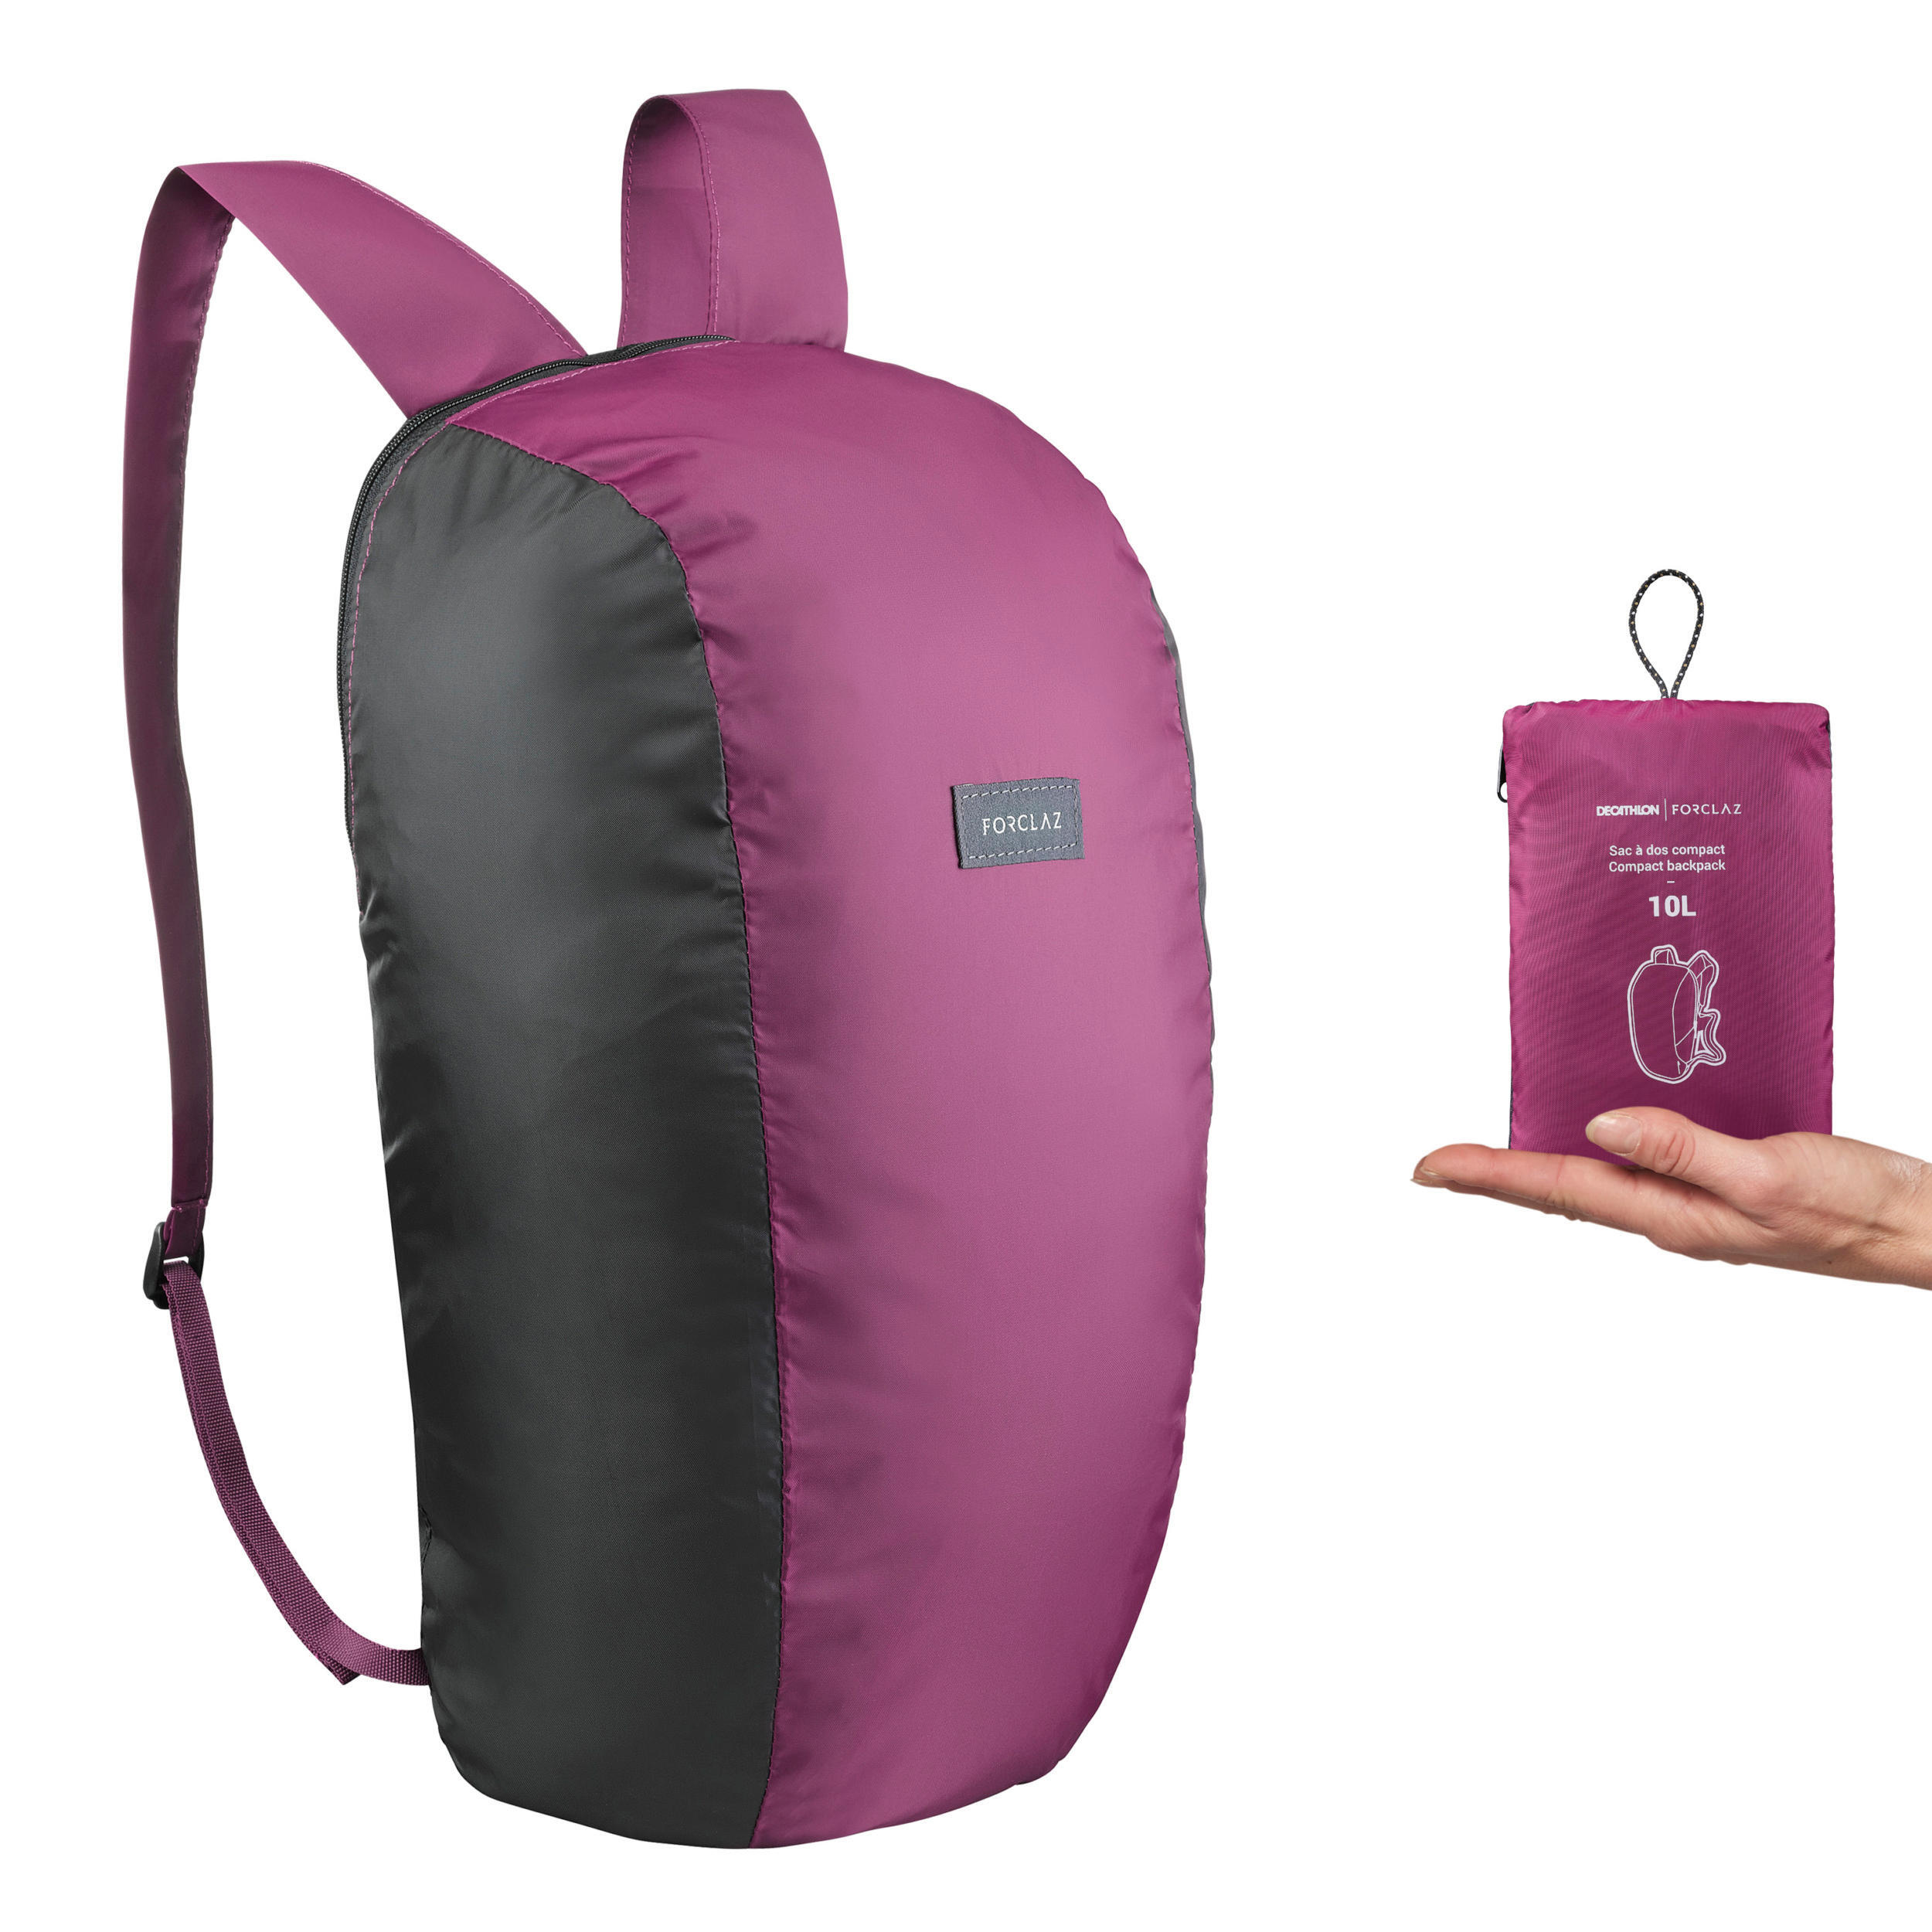 Рюкзак складной Forclaz Travel Compact 10 л, светло-сливовый/черный